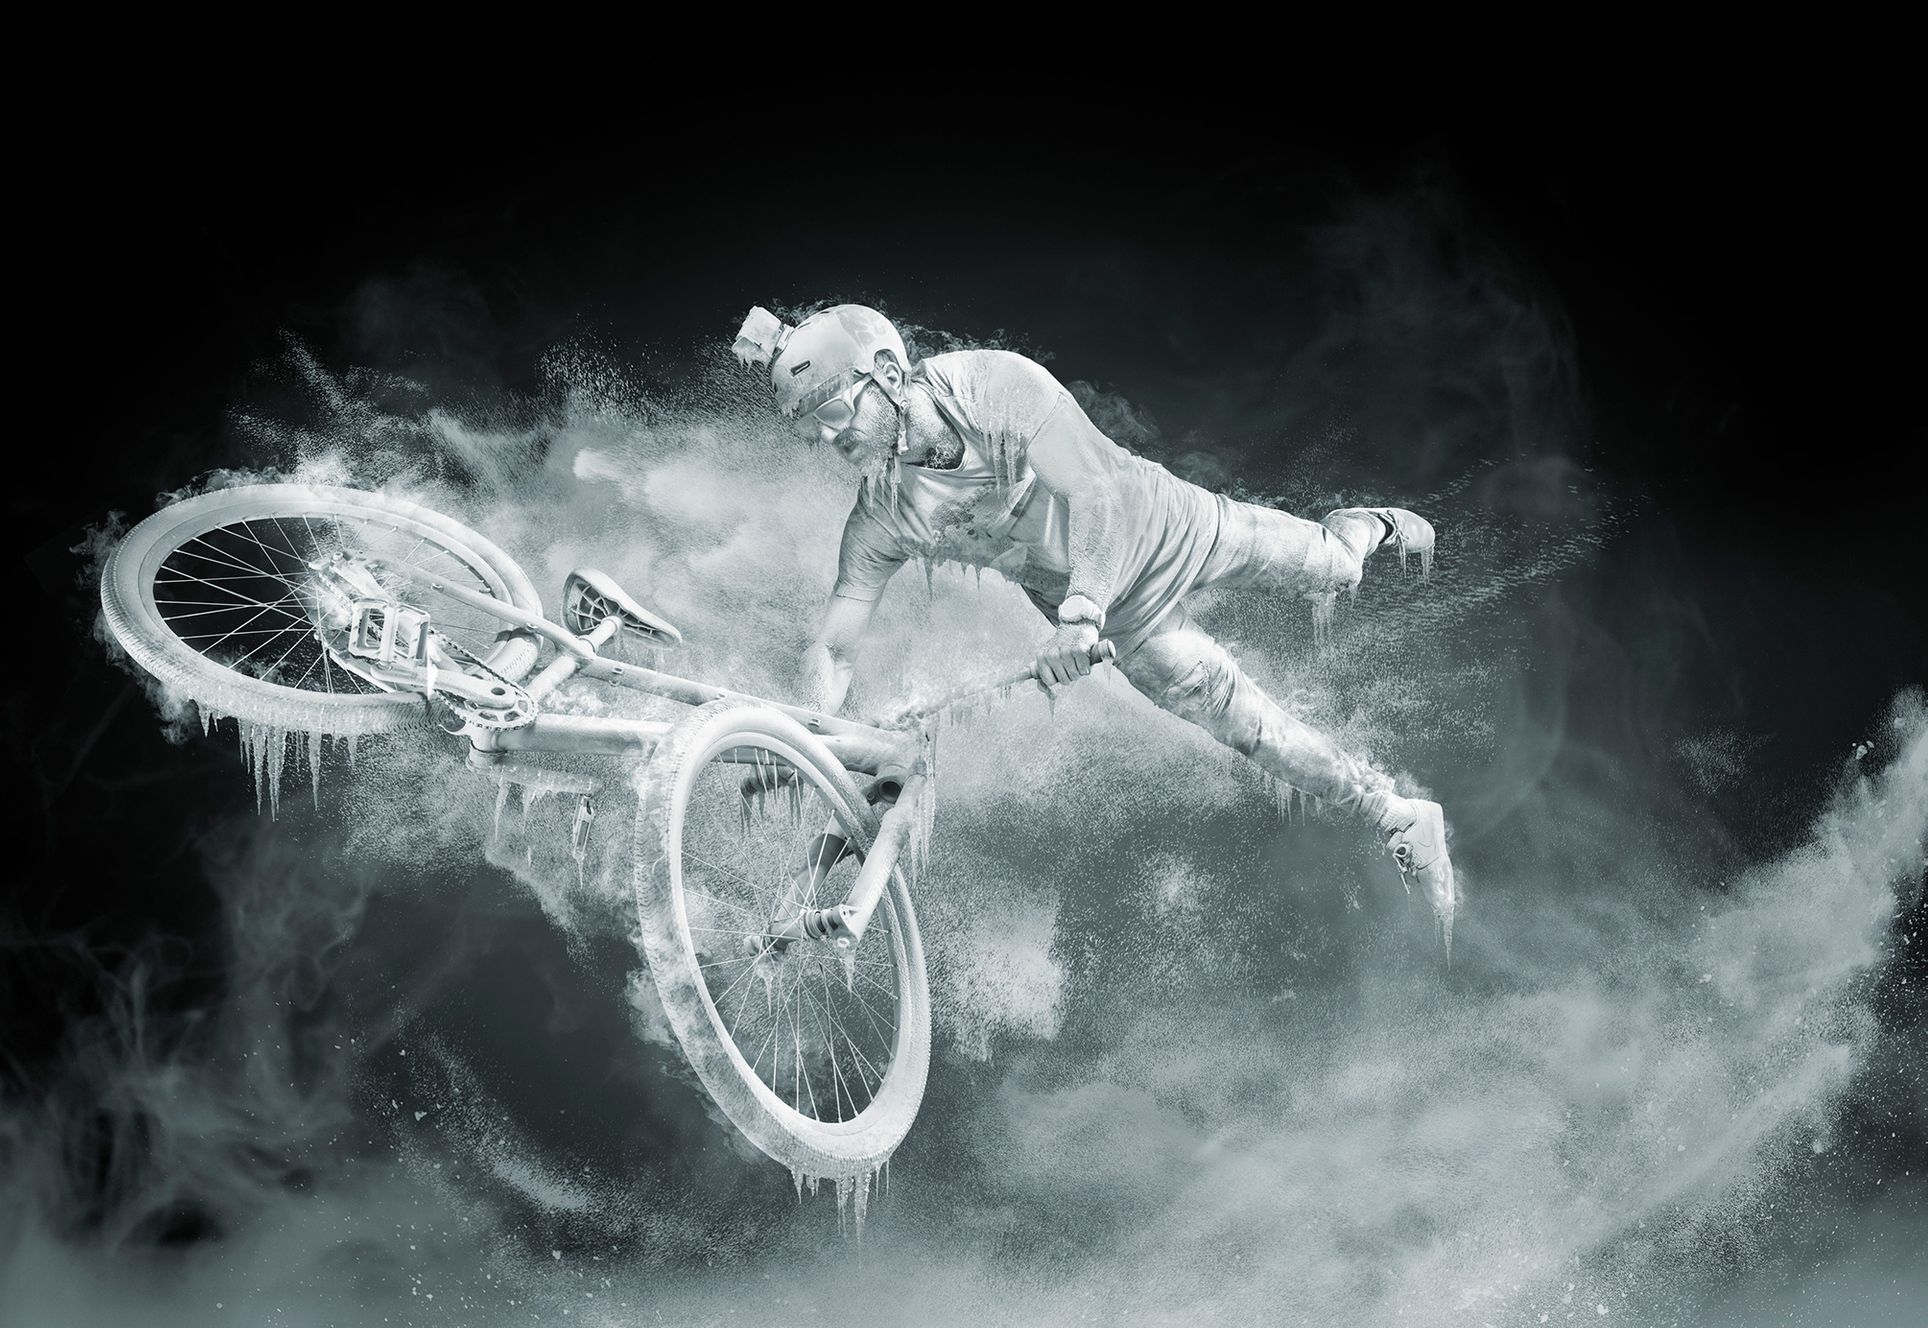 Vítězné snímky z fotografické soutěže Red Bull Illume 2019, zaměřené na extrémní sporty